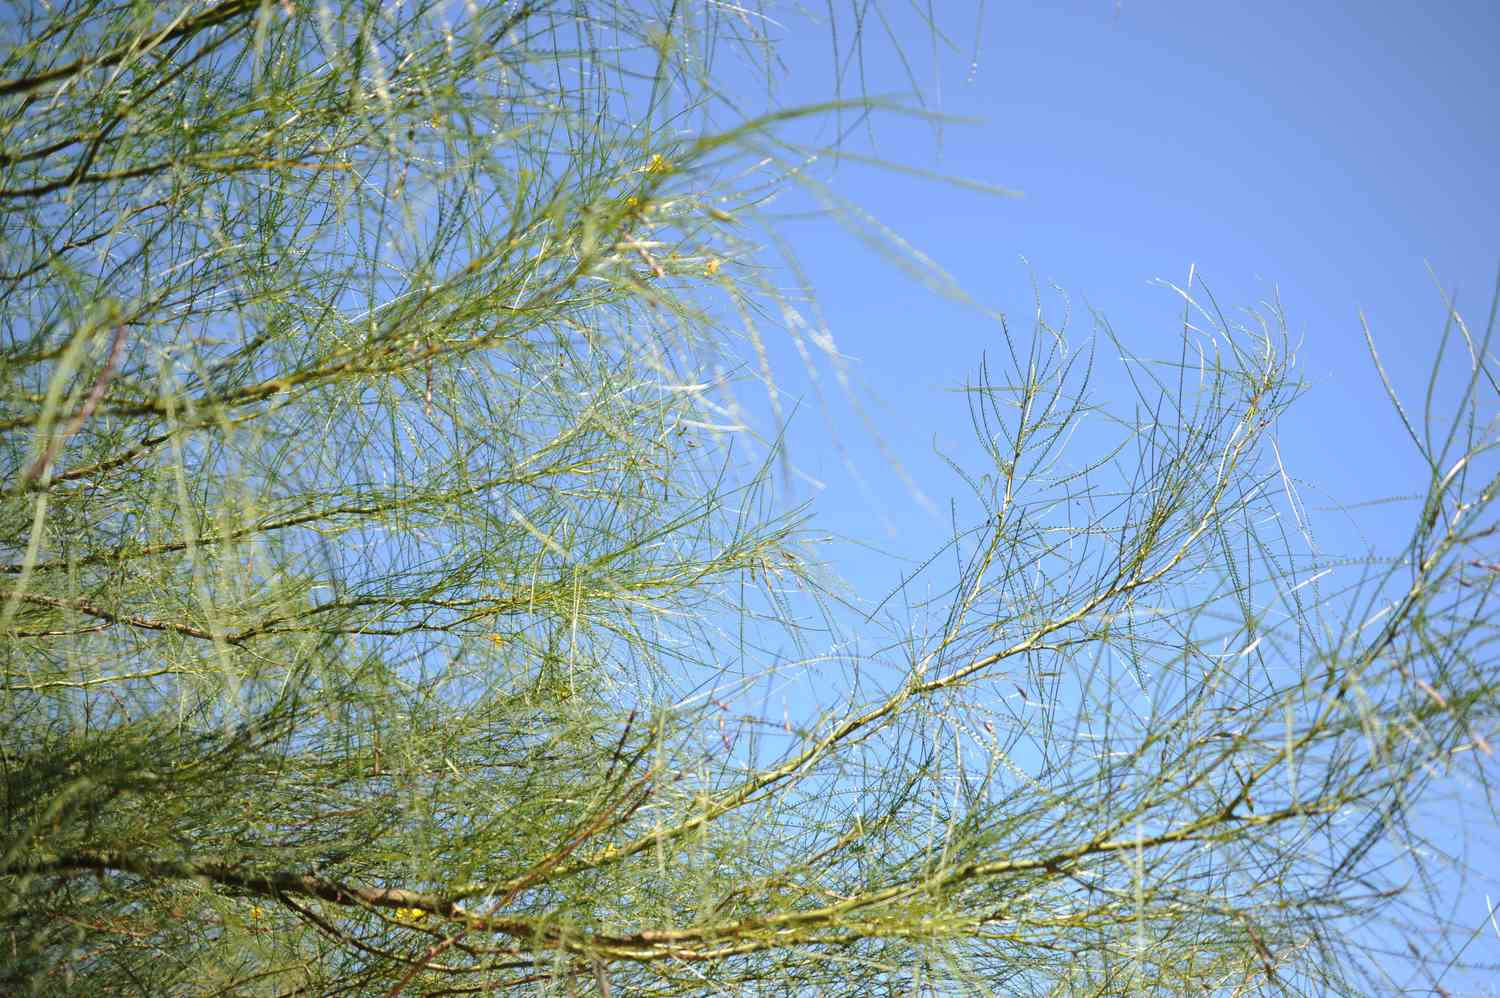 Palo verde Baumzweige mit langen und dünnen gefiederten Zweigen vor blauem Himmel